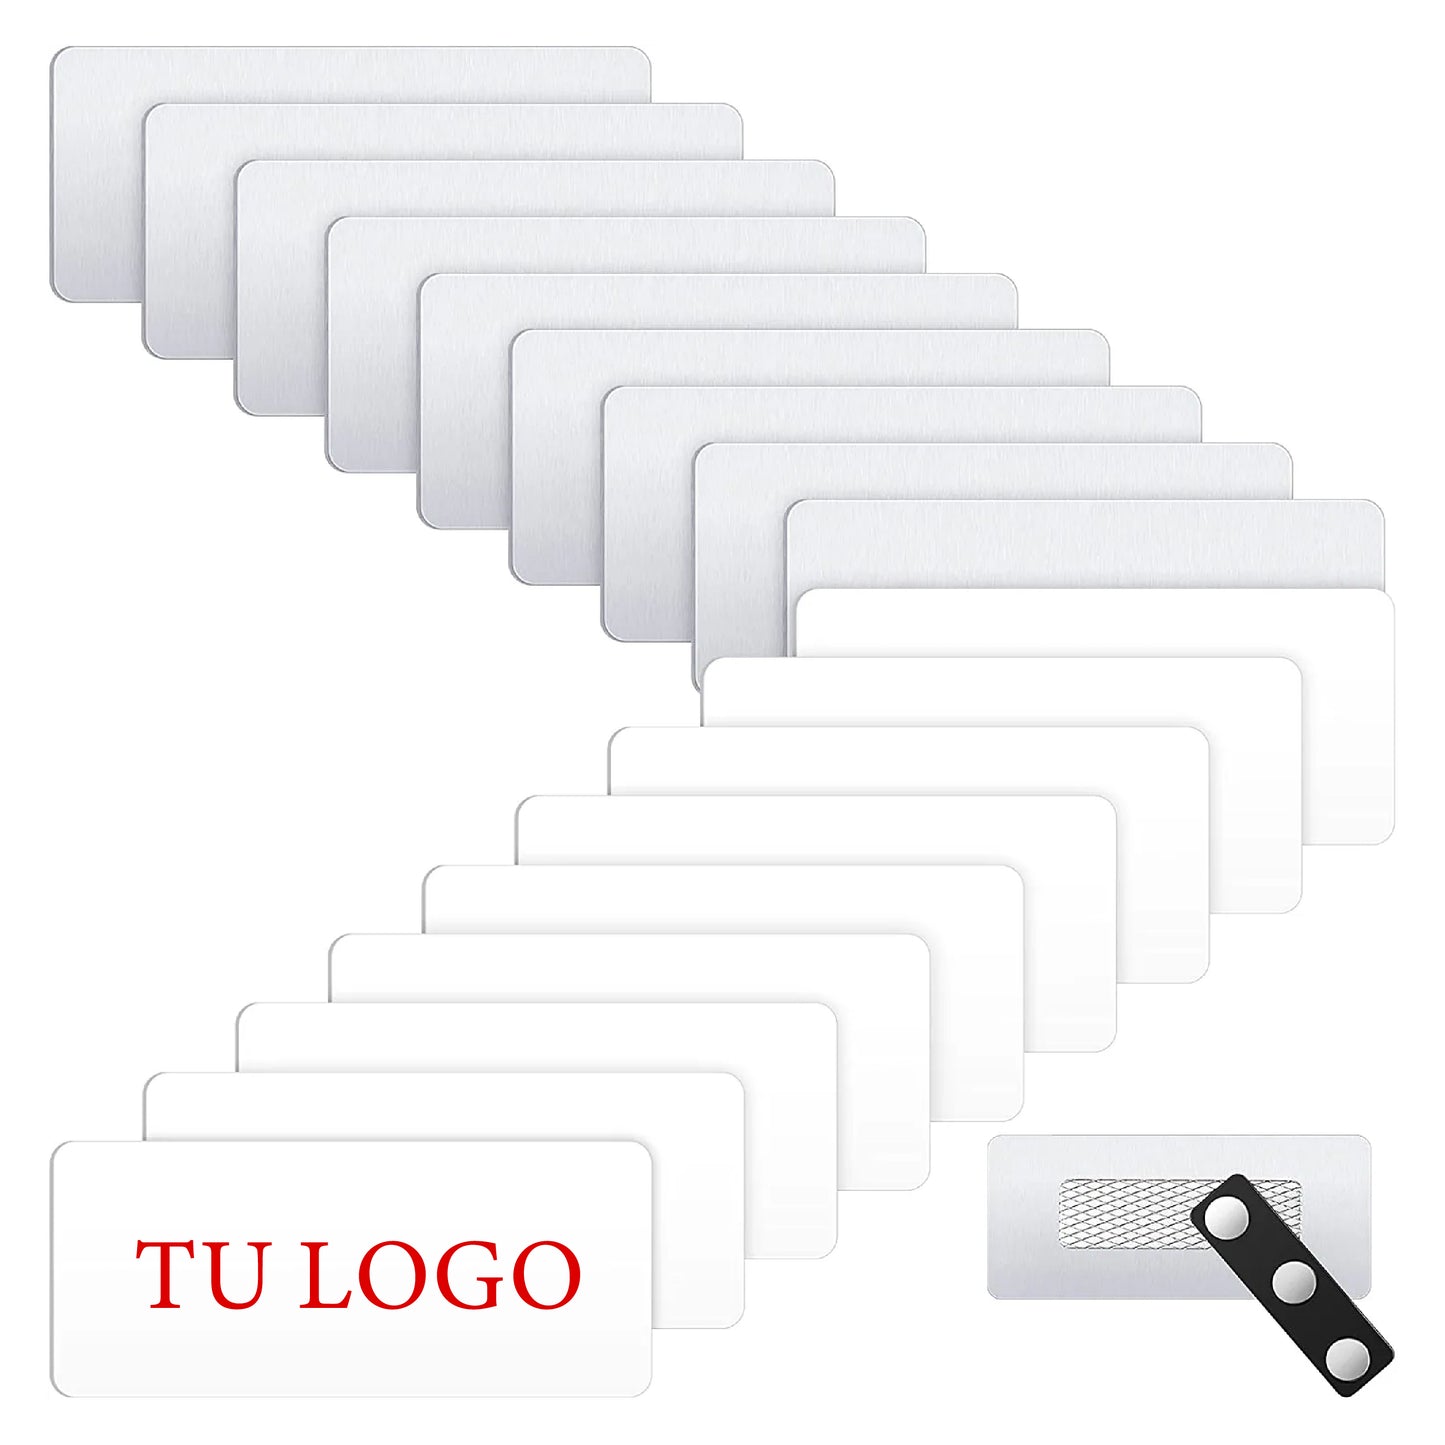 Distintivos Magnéticos (Name Tags) Personalizados Full Color Para Empresas, Hotelería, Servicio al Cliente